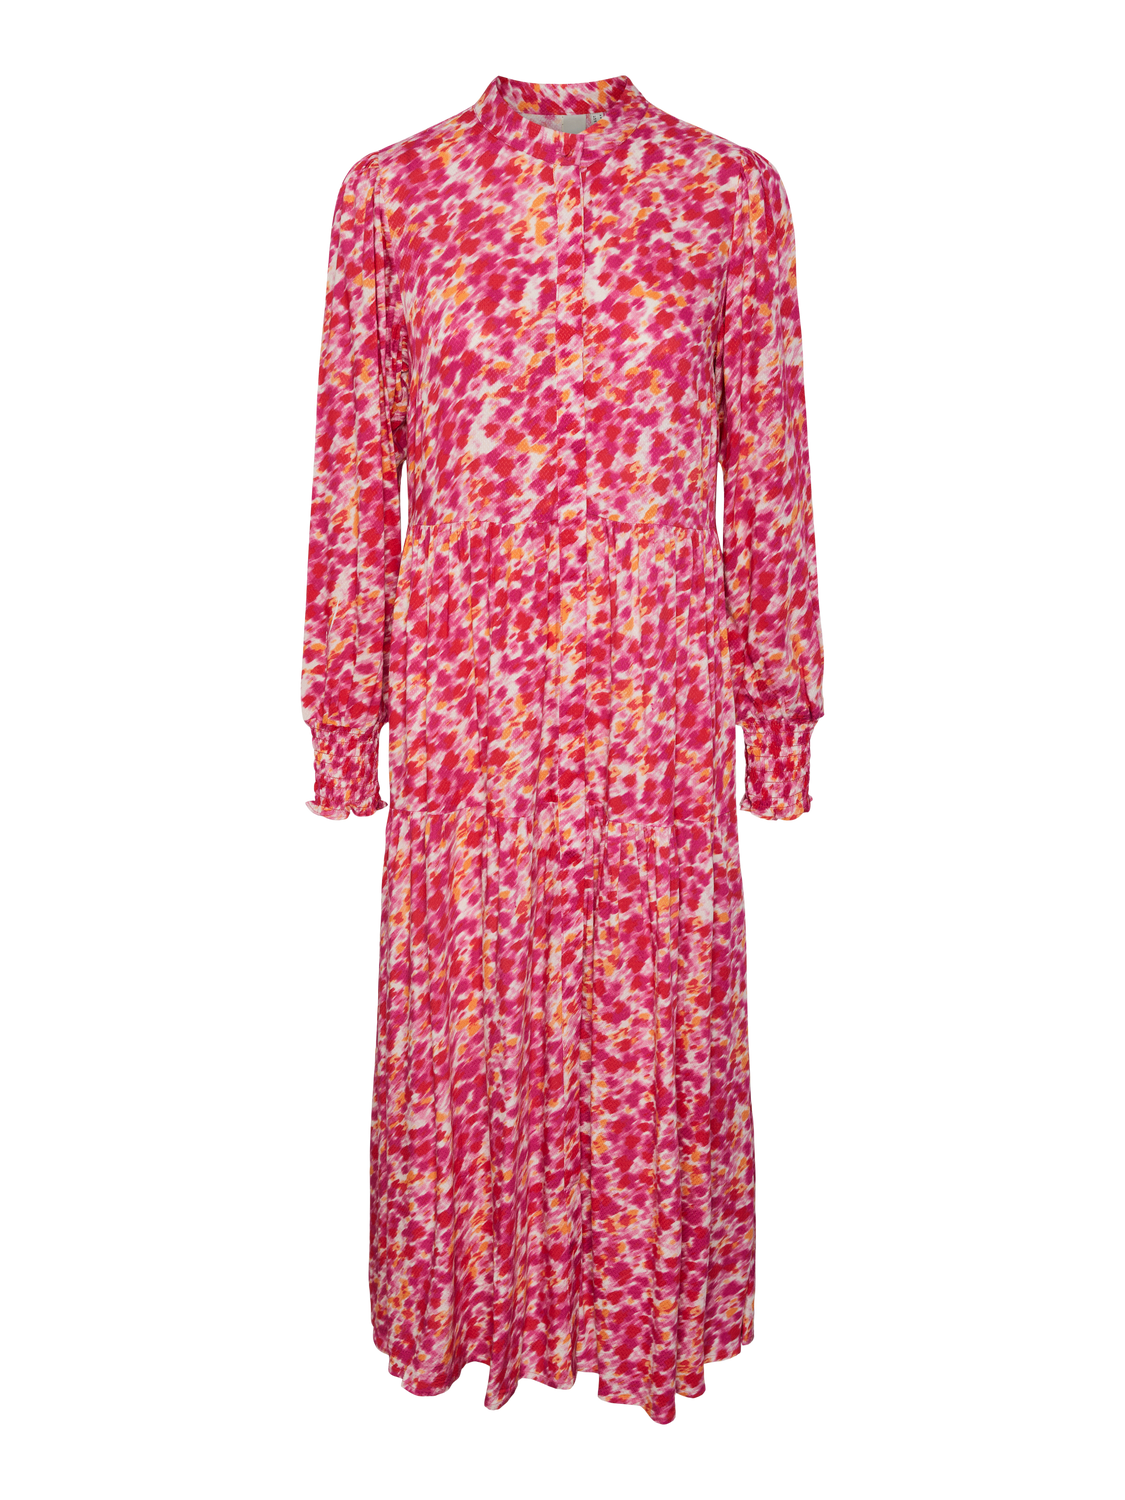 YASALIRA Dress - Raspberry Sorbet